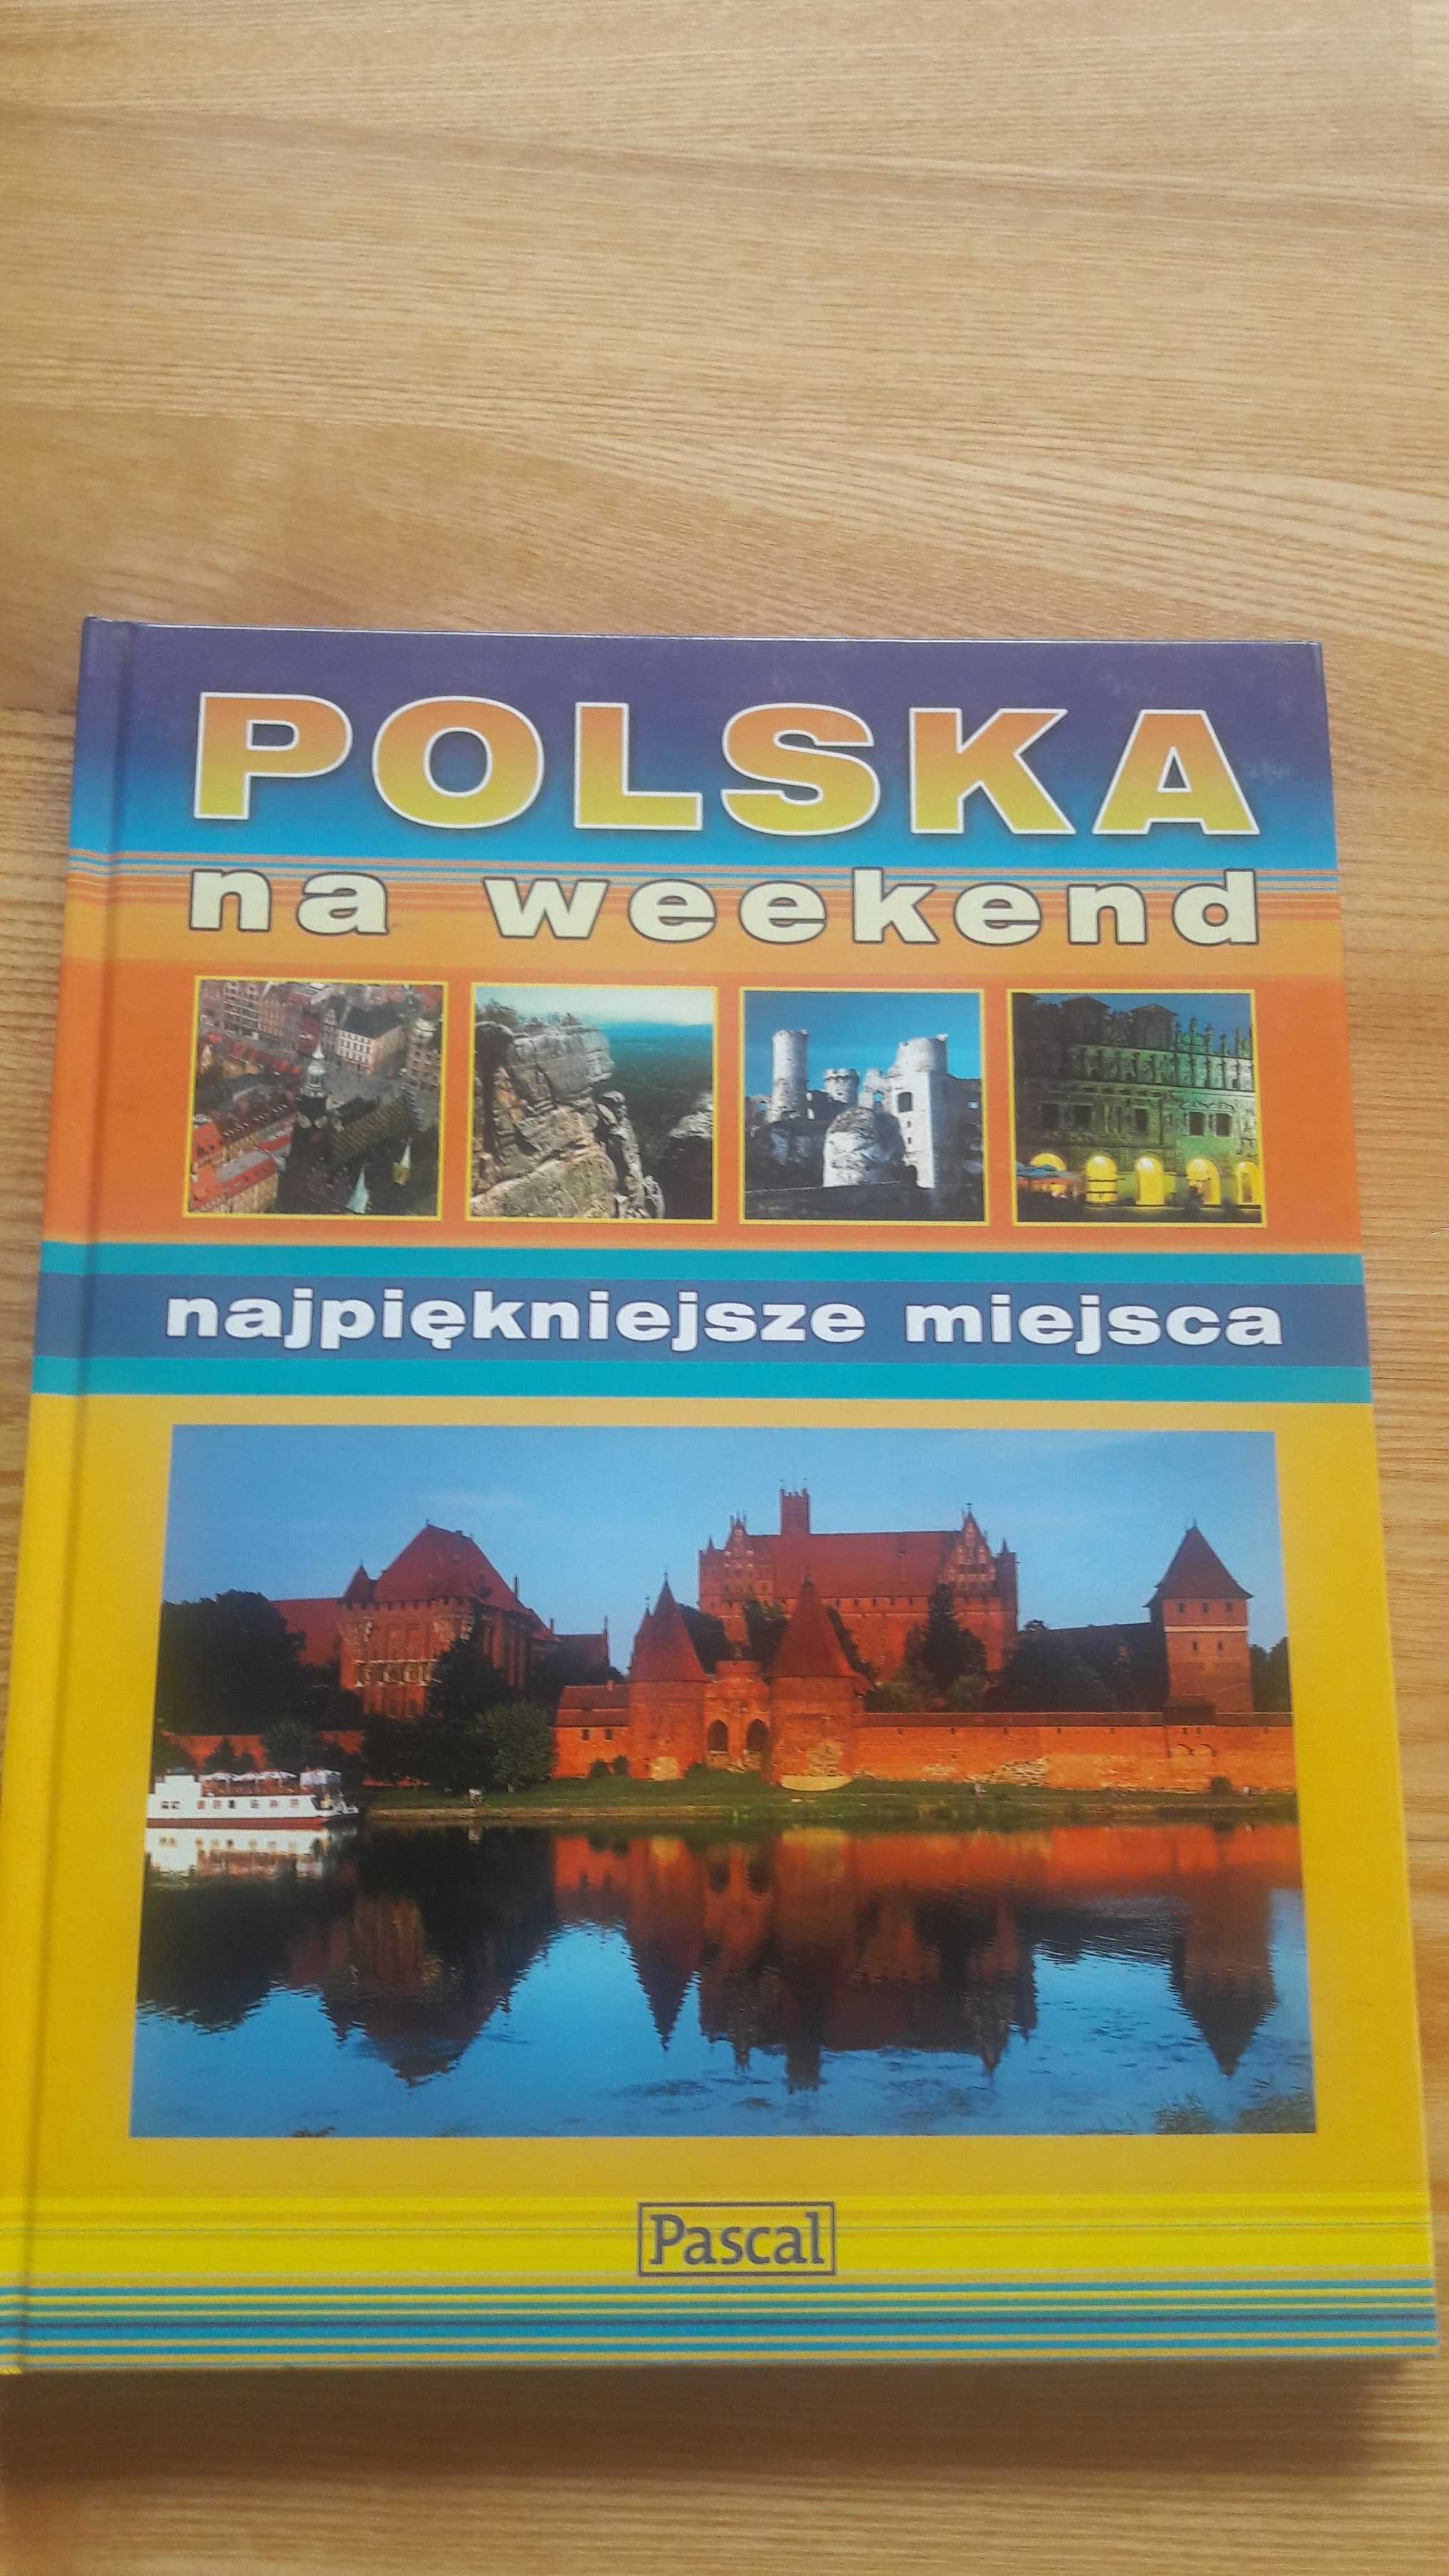 Polska na weekend - najpiękniejsze miejsca+ Przyroda Polski